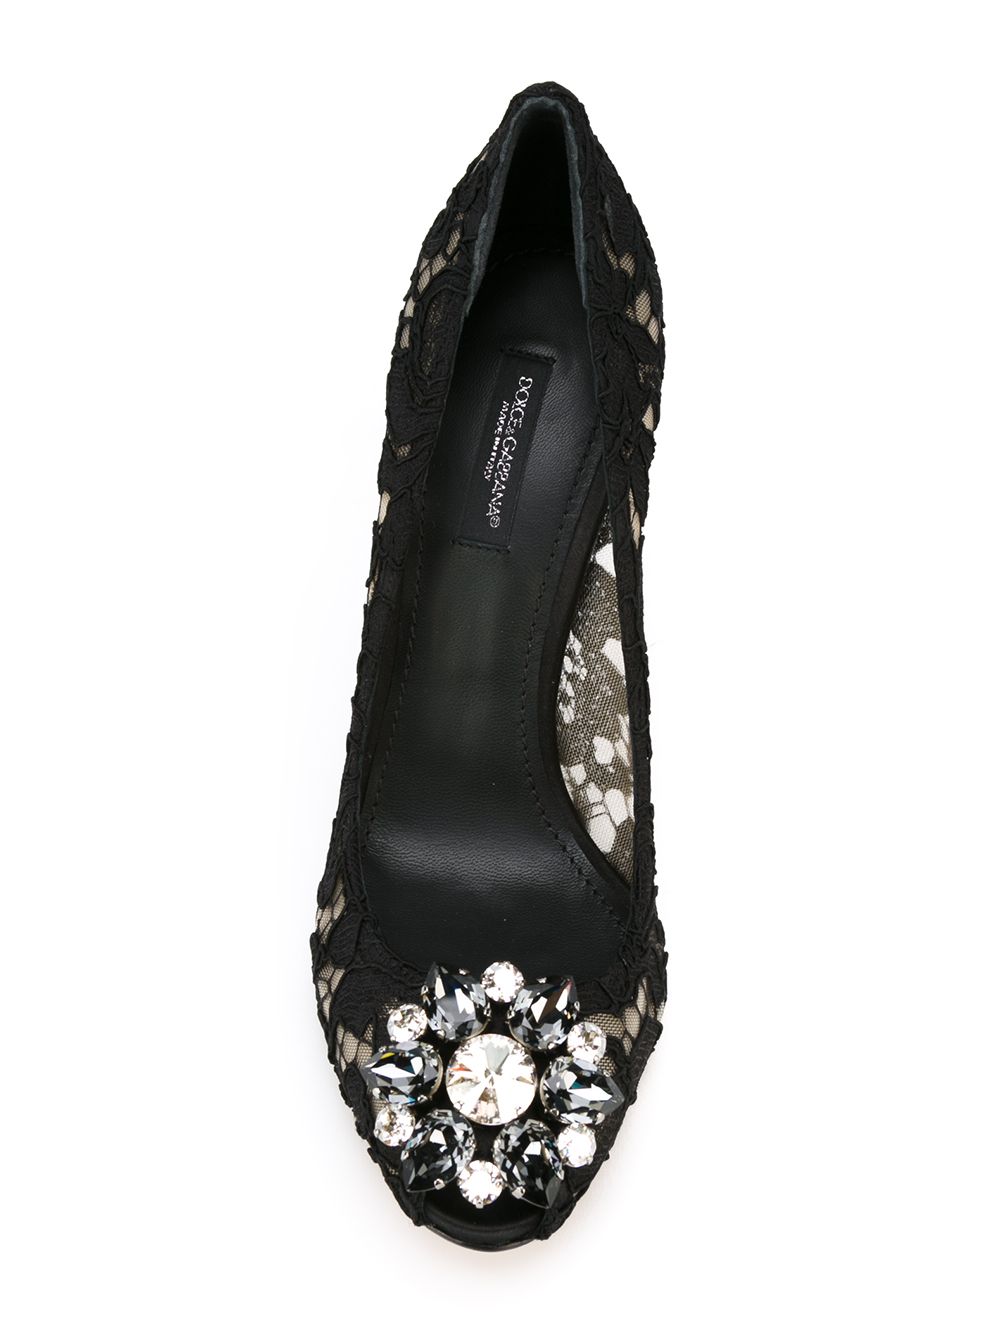 фото Dolce & gabbana кружевные туфли с цветочным узором